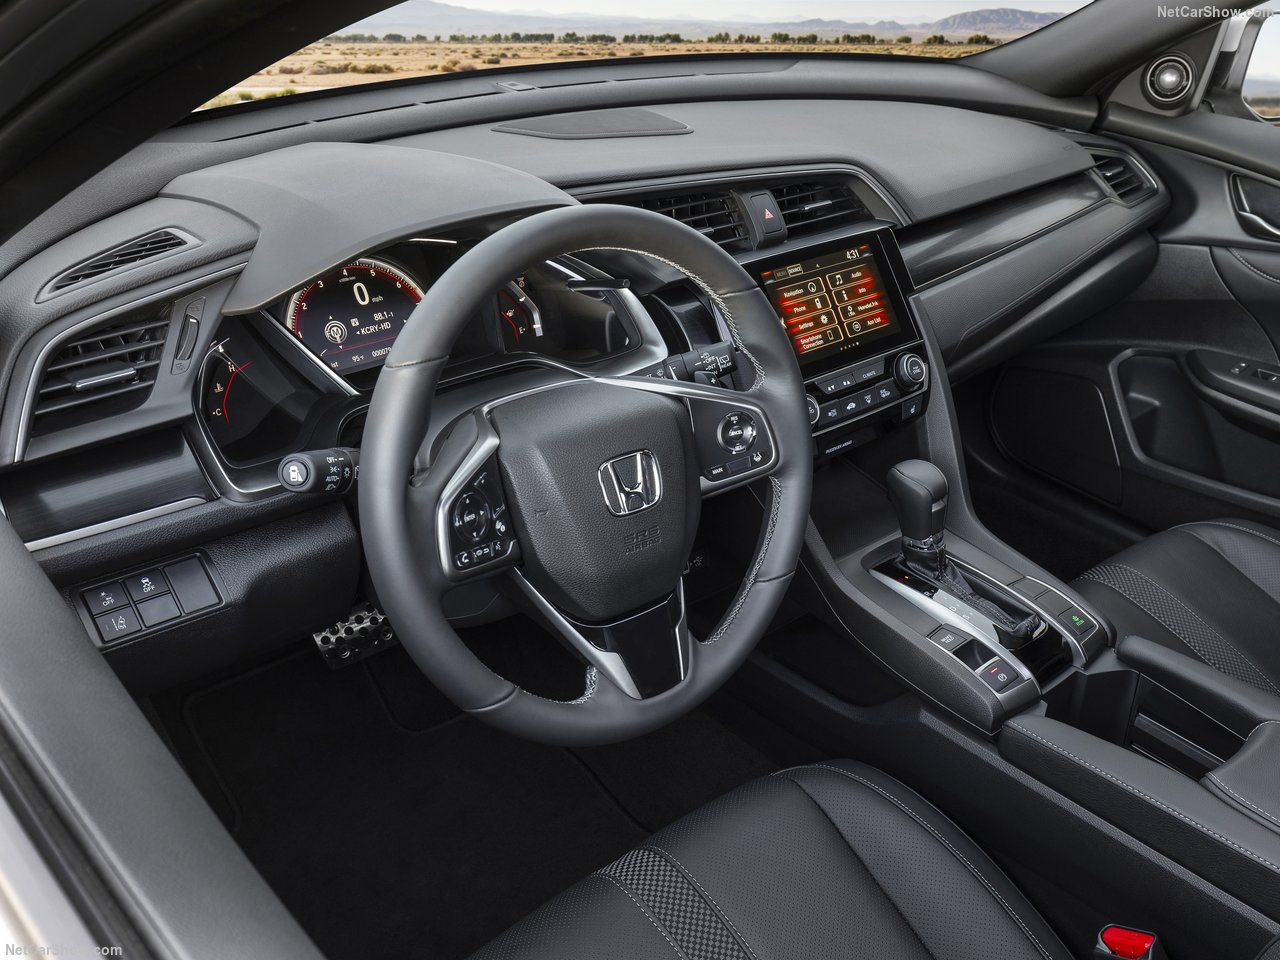 2020 Honda Civic Hatchback yenilendi! Yeni Honda Civic’in fiyatı ne kadar? Honda Civic’in motor ve donanım özellikleri...